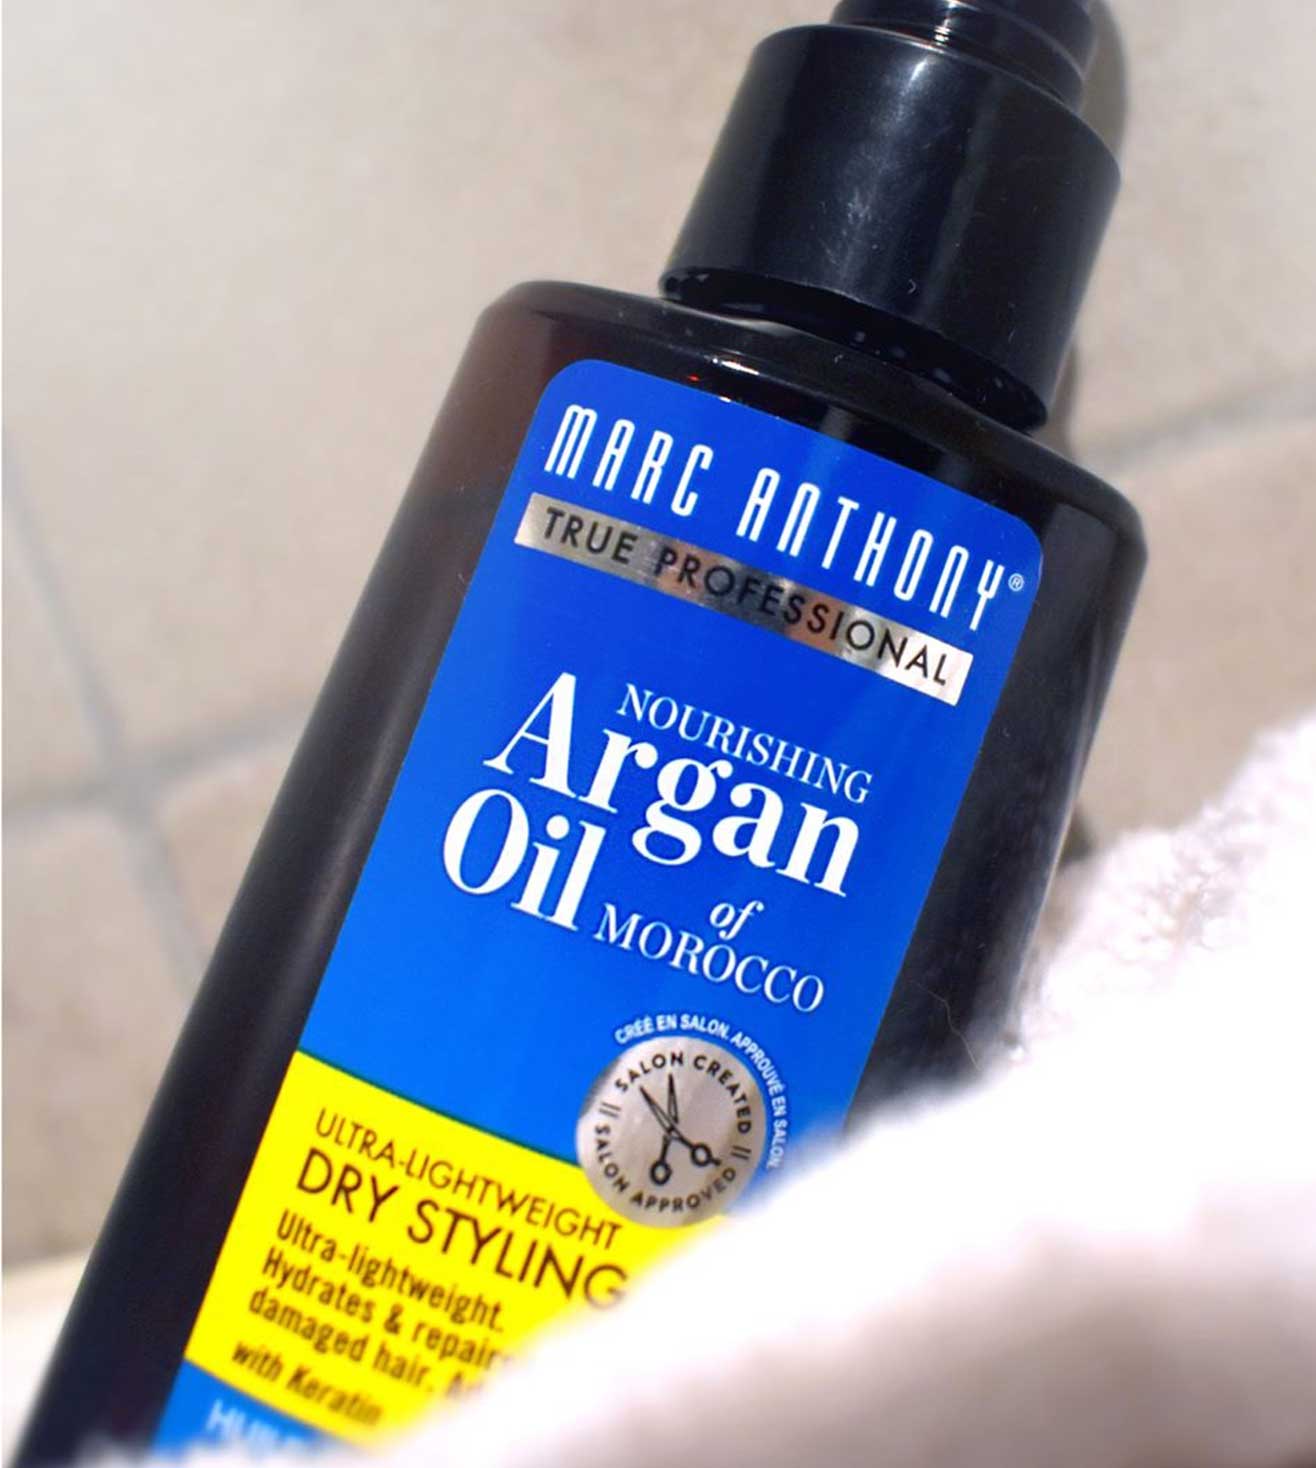 Nourishing Argan Oil Dry Styling Oil